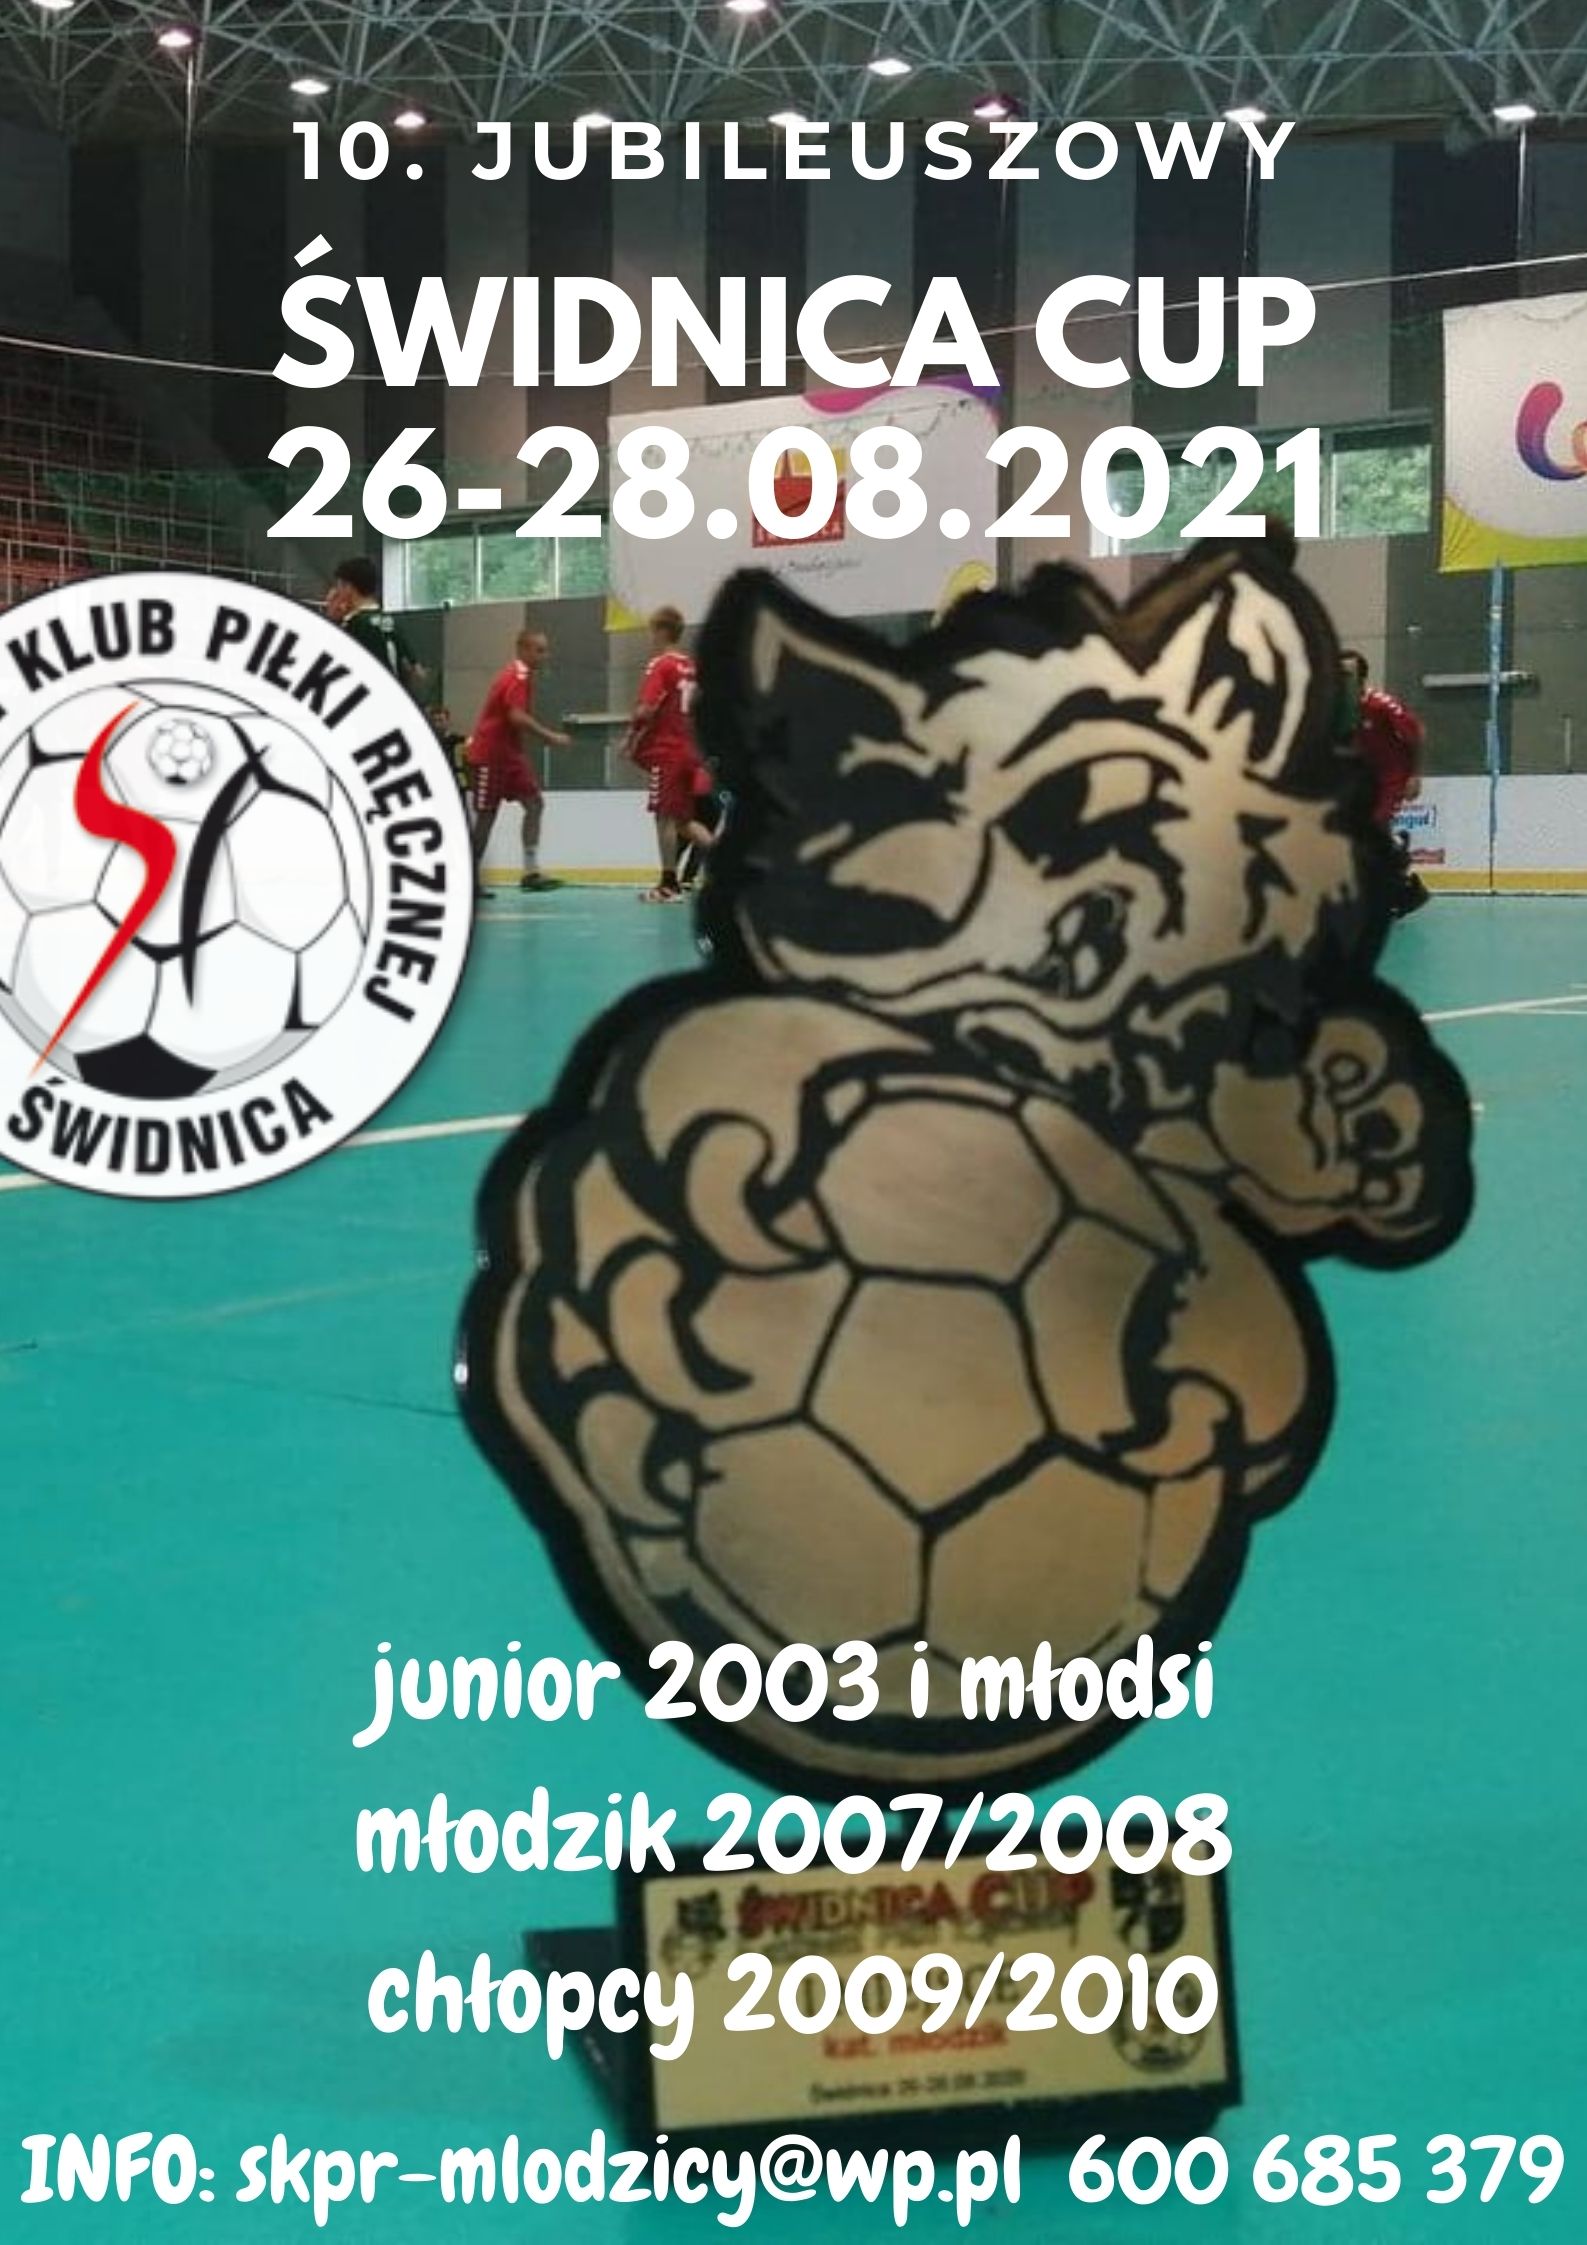 Festiwal Piłki Ręcznej Świdnica CUP